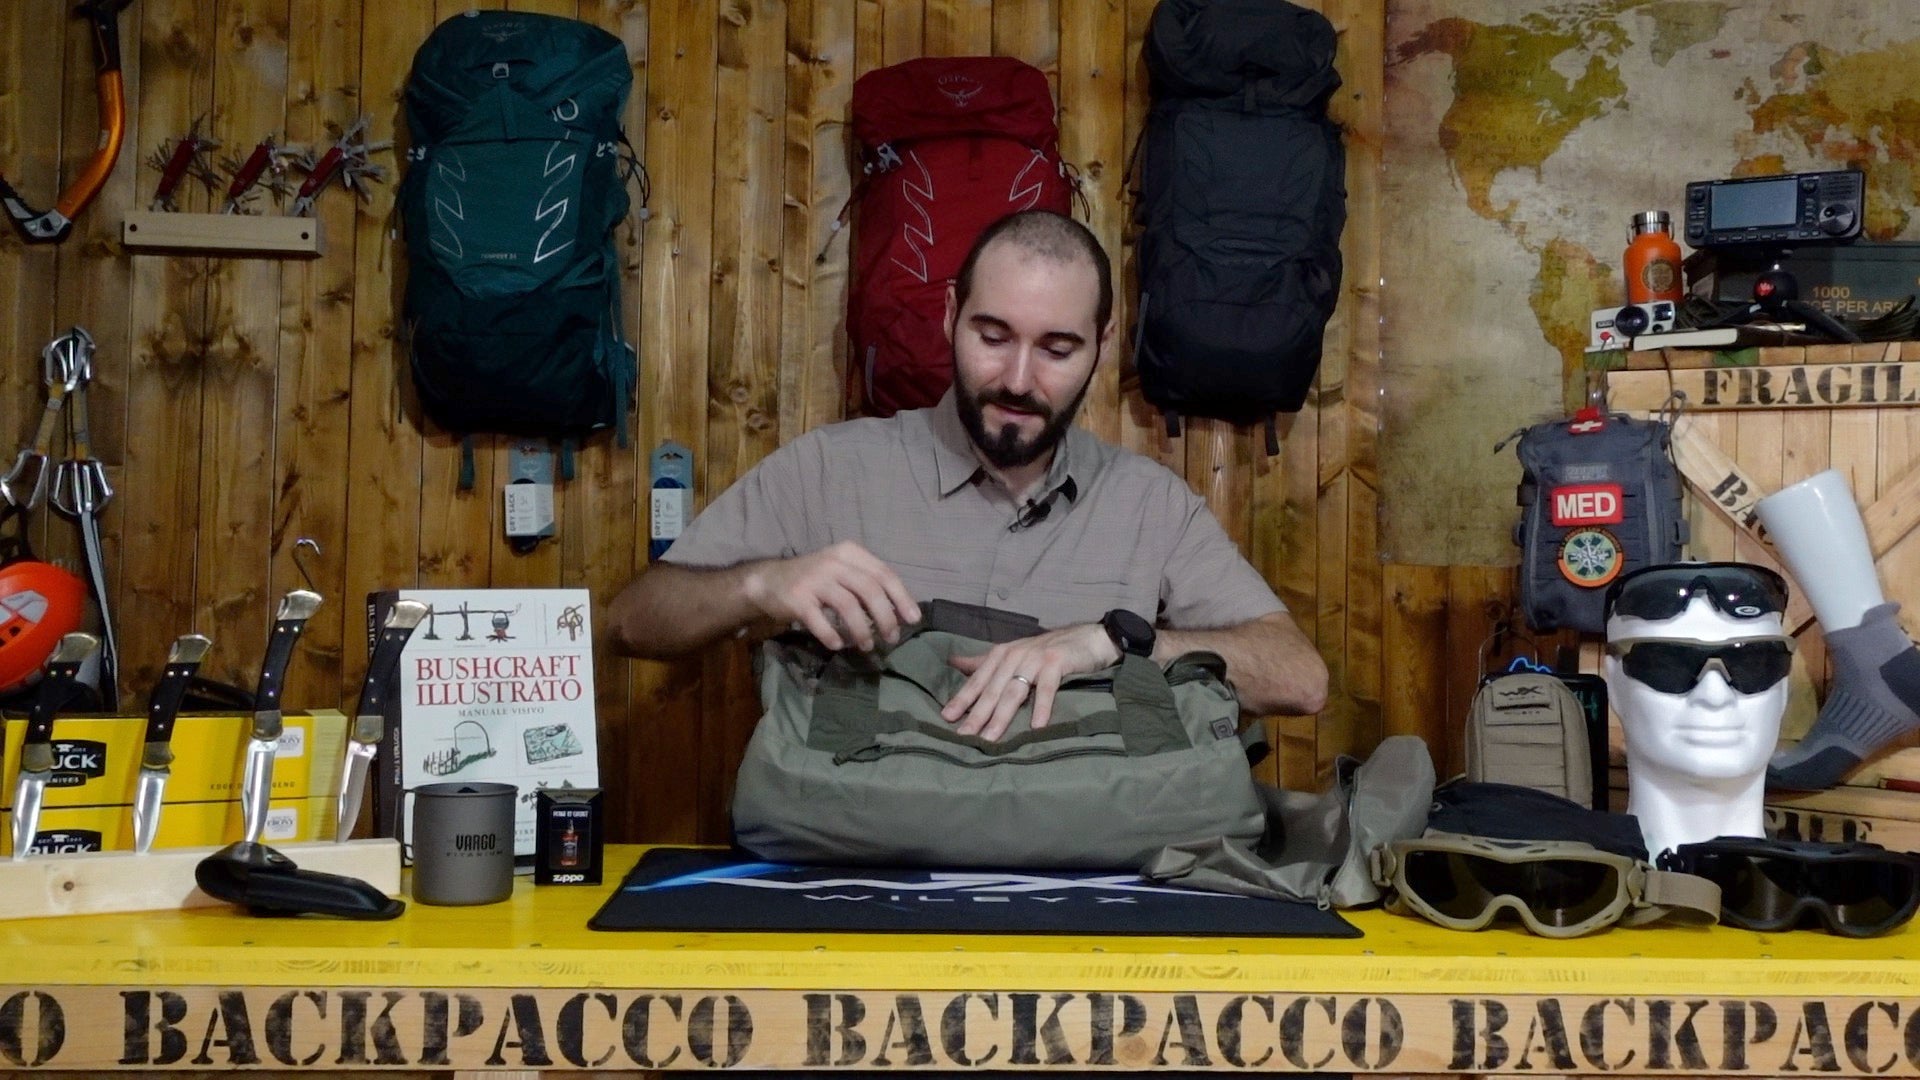 Paolo di backpacco spiega la RAPID DUFFEL SIERRA di 5.11